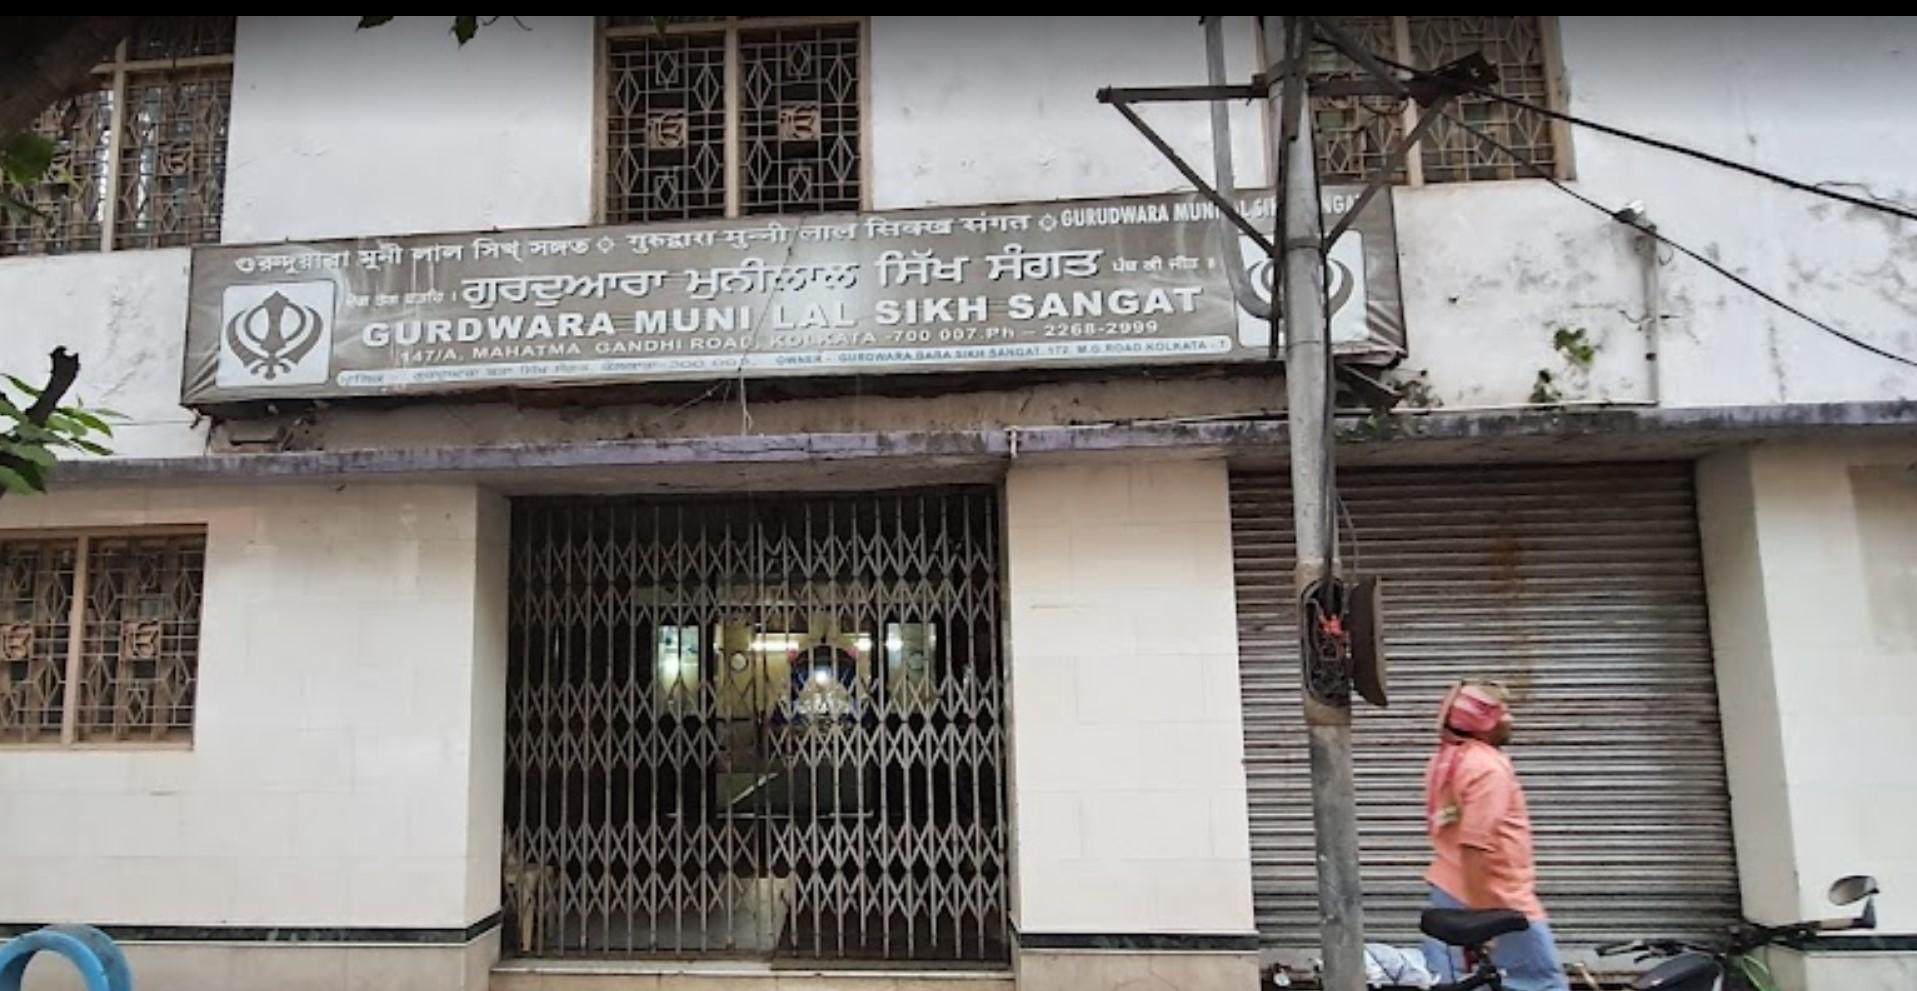 Gurdwara Muni Lal Sikh Sangat, Kolkata